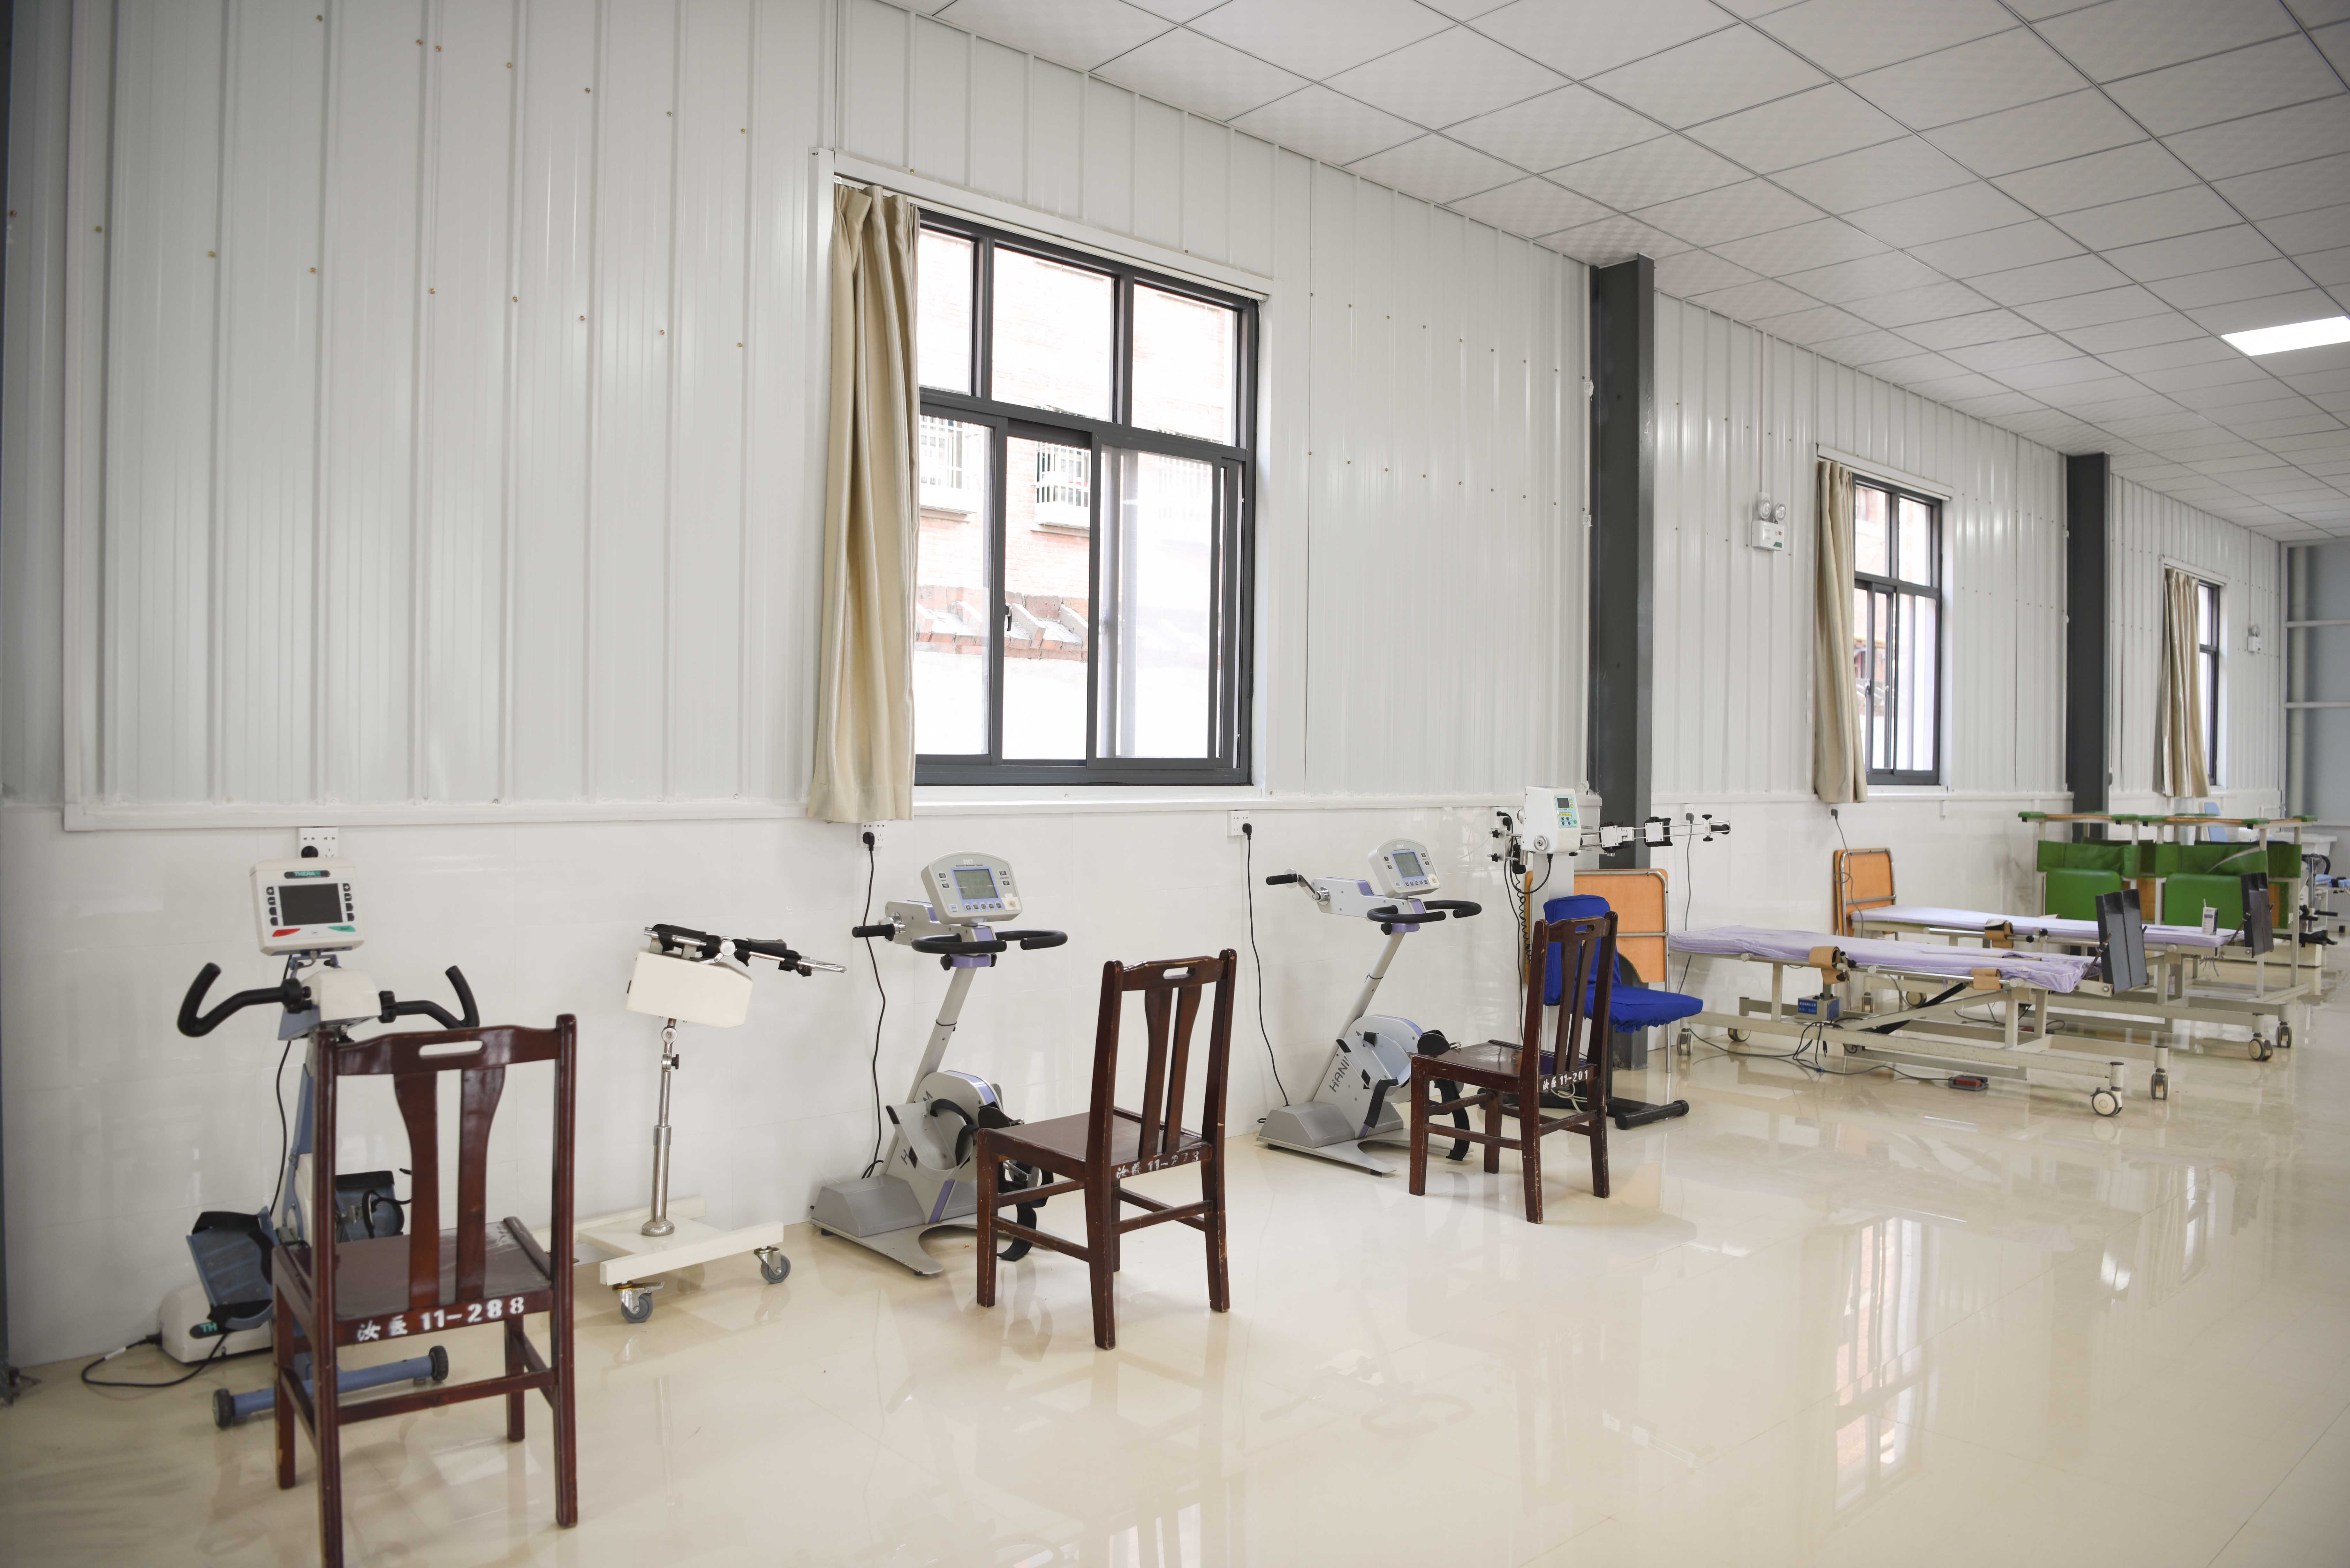 汝阳县人民医院全新康复大厅正式启用